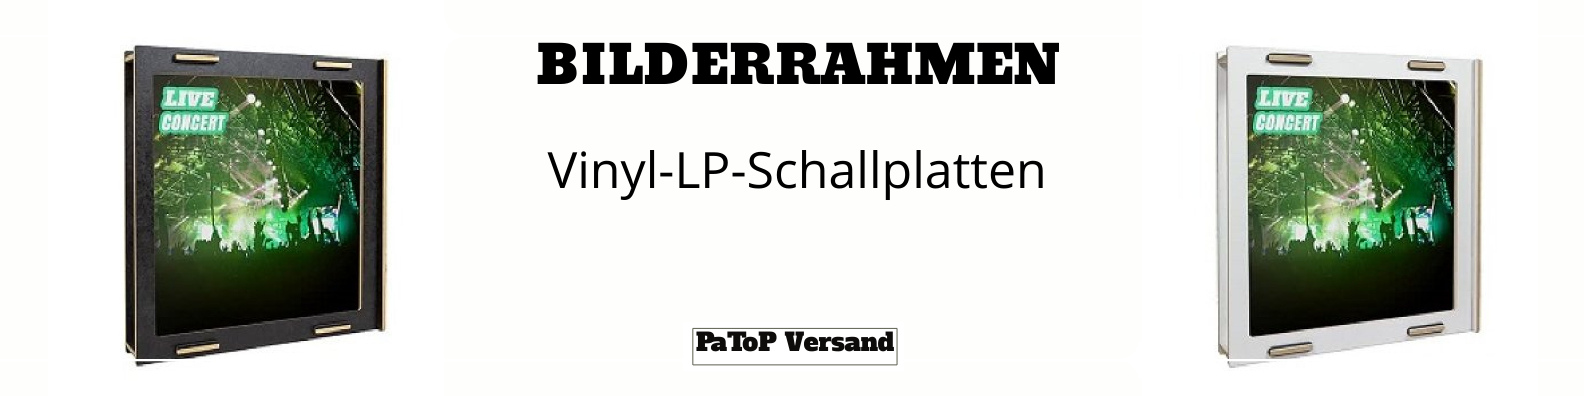 Werkhaus Bilderrahmen / Plattenframe Vinyl, LP – 100% Made in Germany